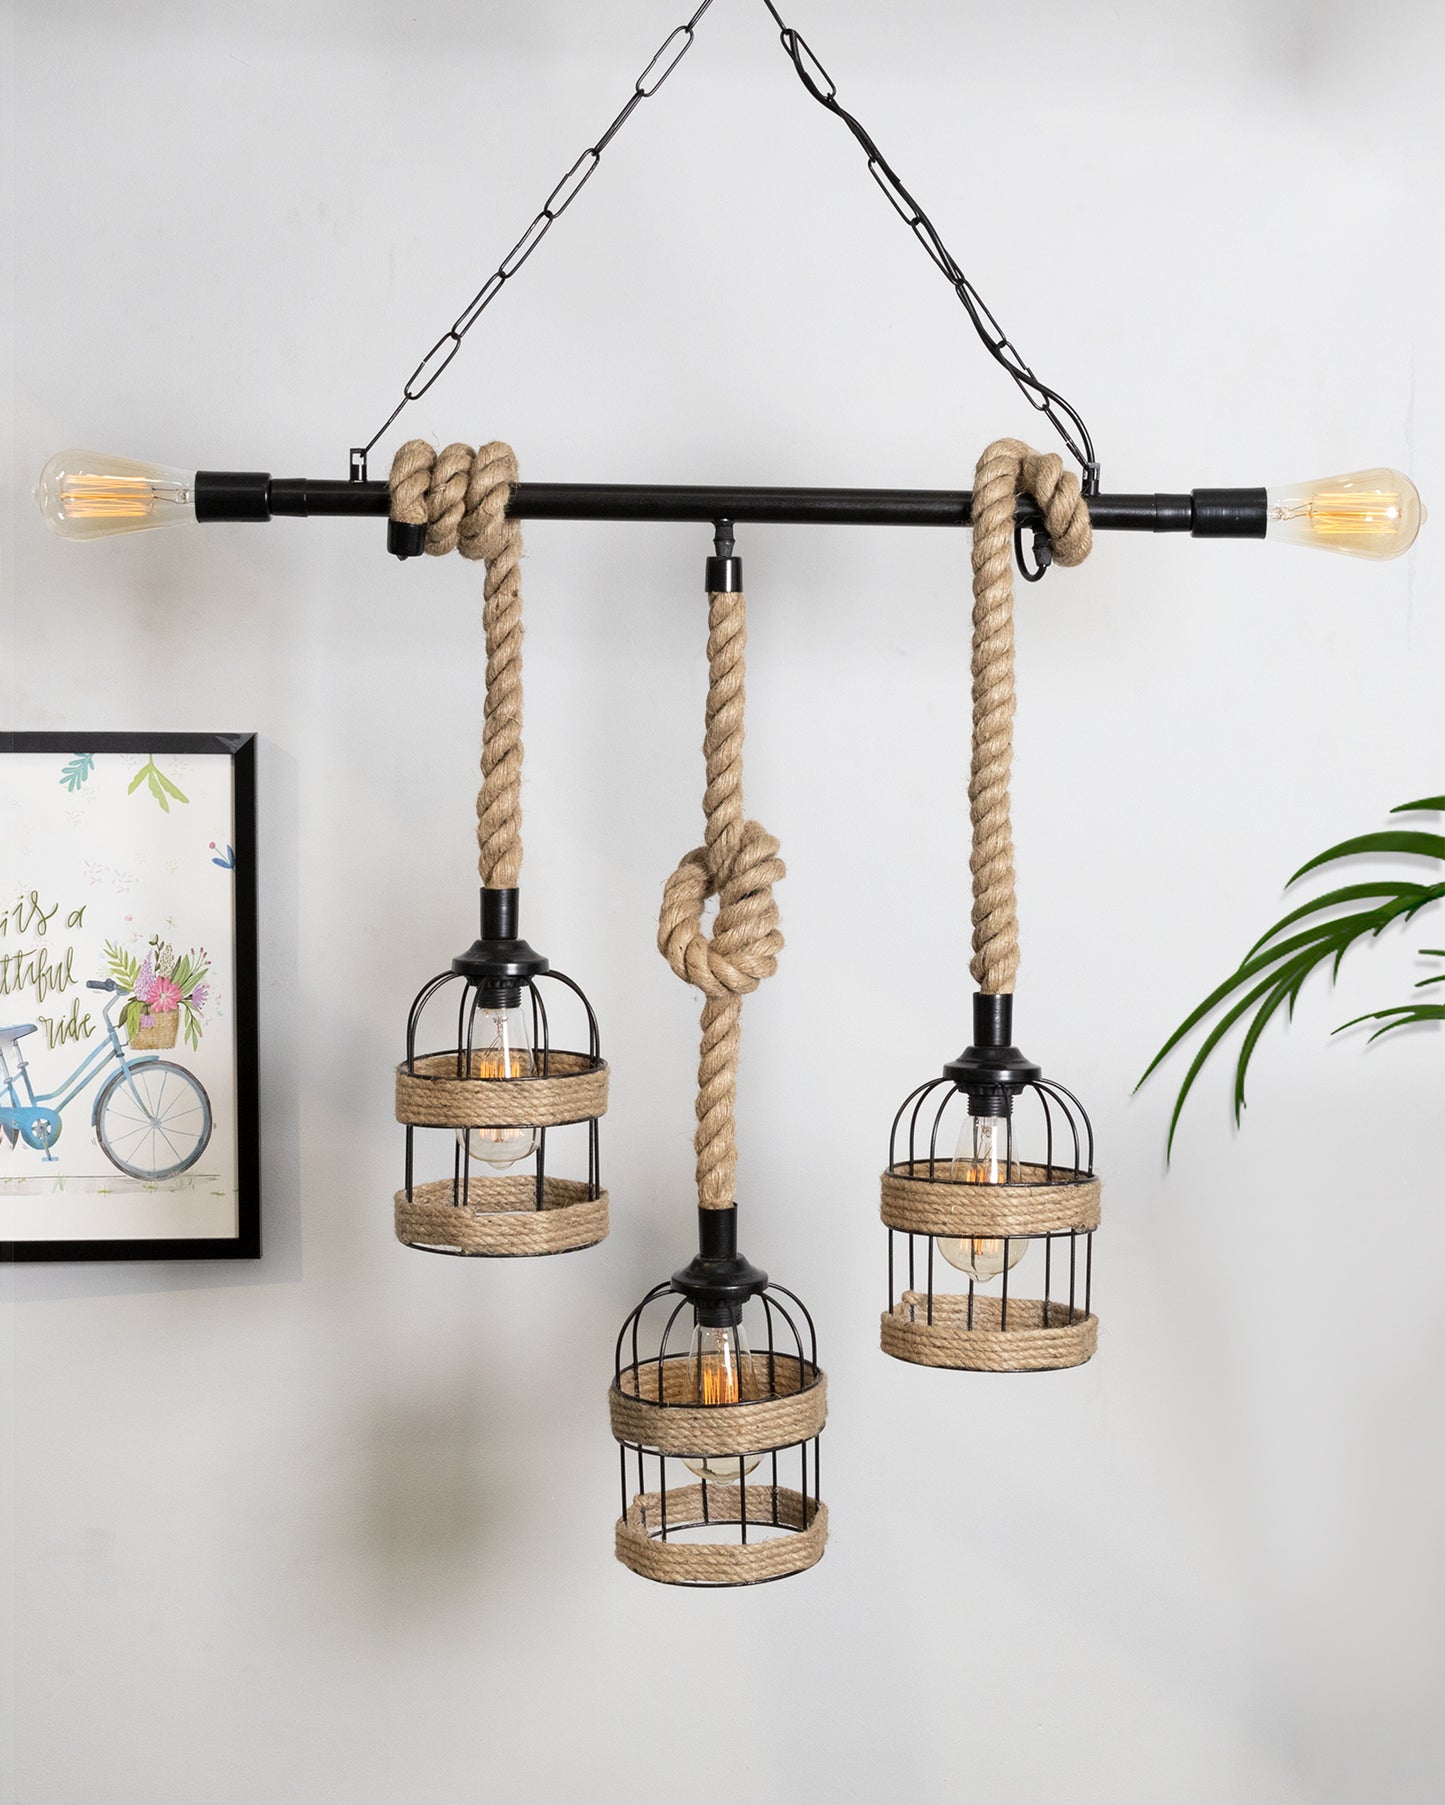 Handmade Hanging Chandelier Light, Metal Black cage 5 Light Fixture Lamp